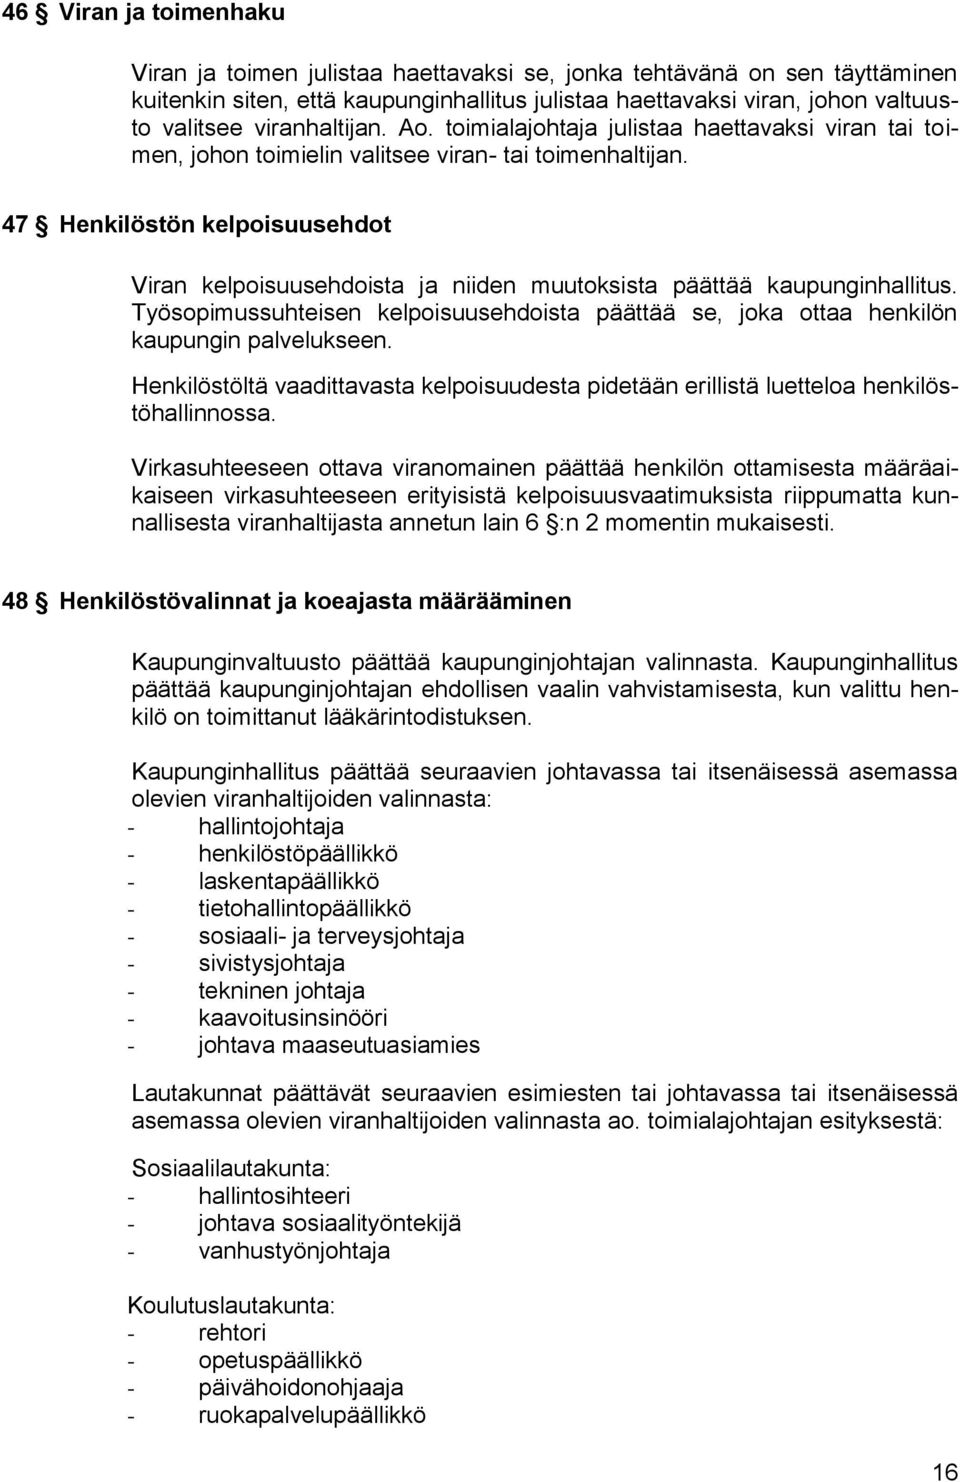 47 Henkilöstön kelpoisuusehdot Viran kelpoisuusehdoista ja niiden muutoksista päättää kaupunginhallitus. Työsopimussuhteisen kelpoisuusehdoista päättää se, joka ottaa henkilön kaupungin palvelukseen.